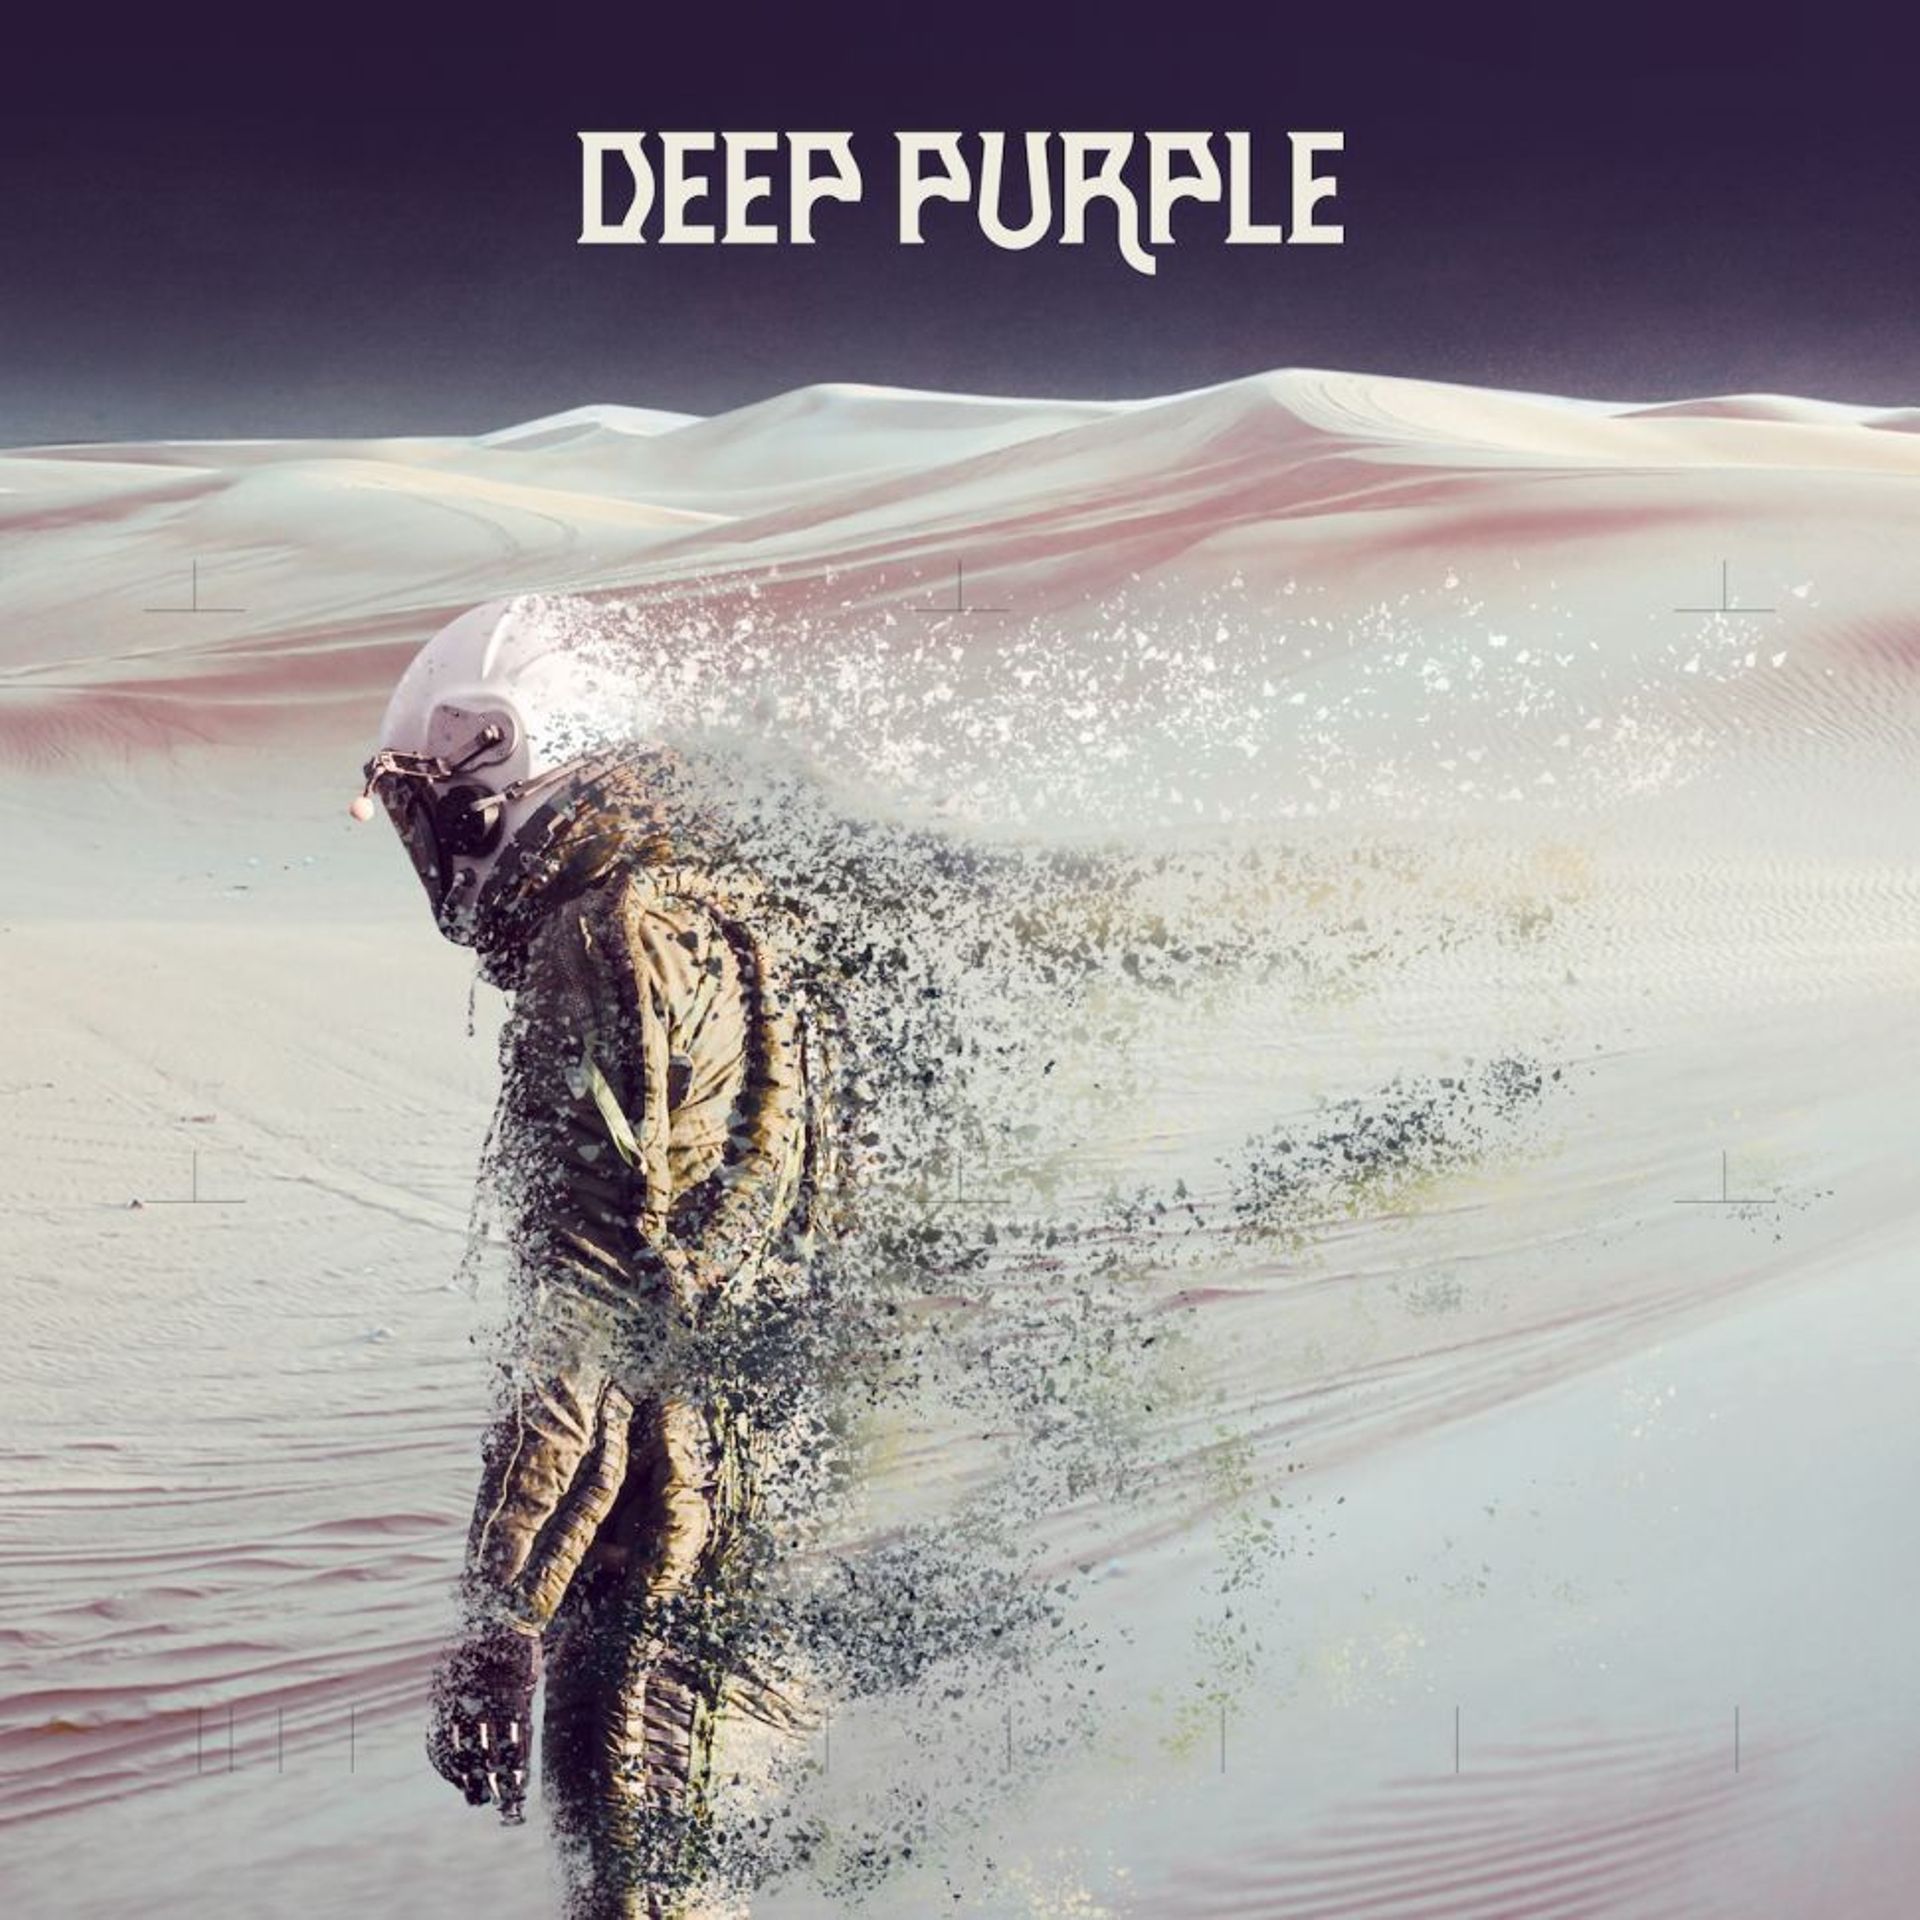 Découvrez ici "Man Alive", le nouveau single de Deep Purple !